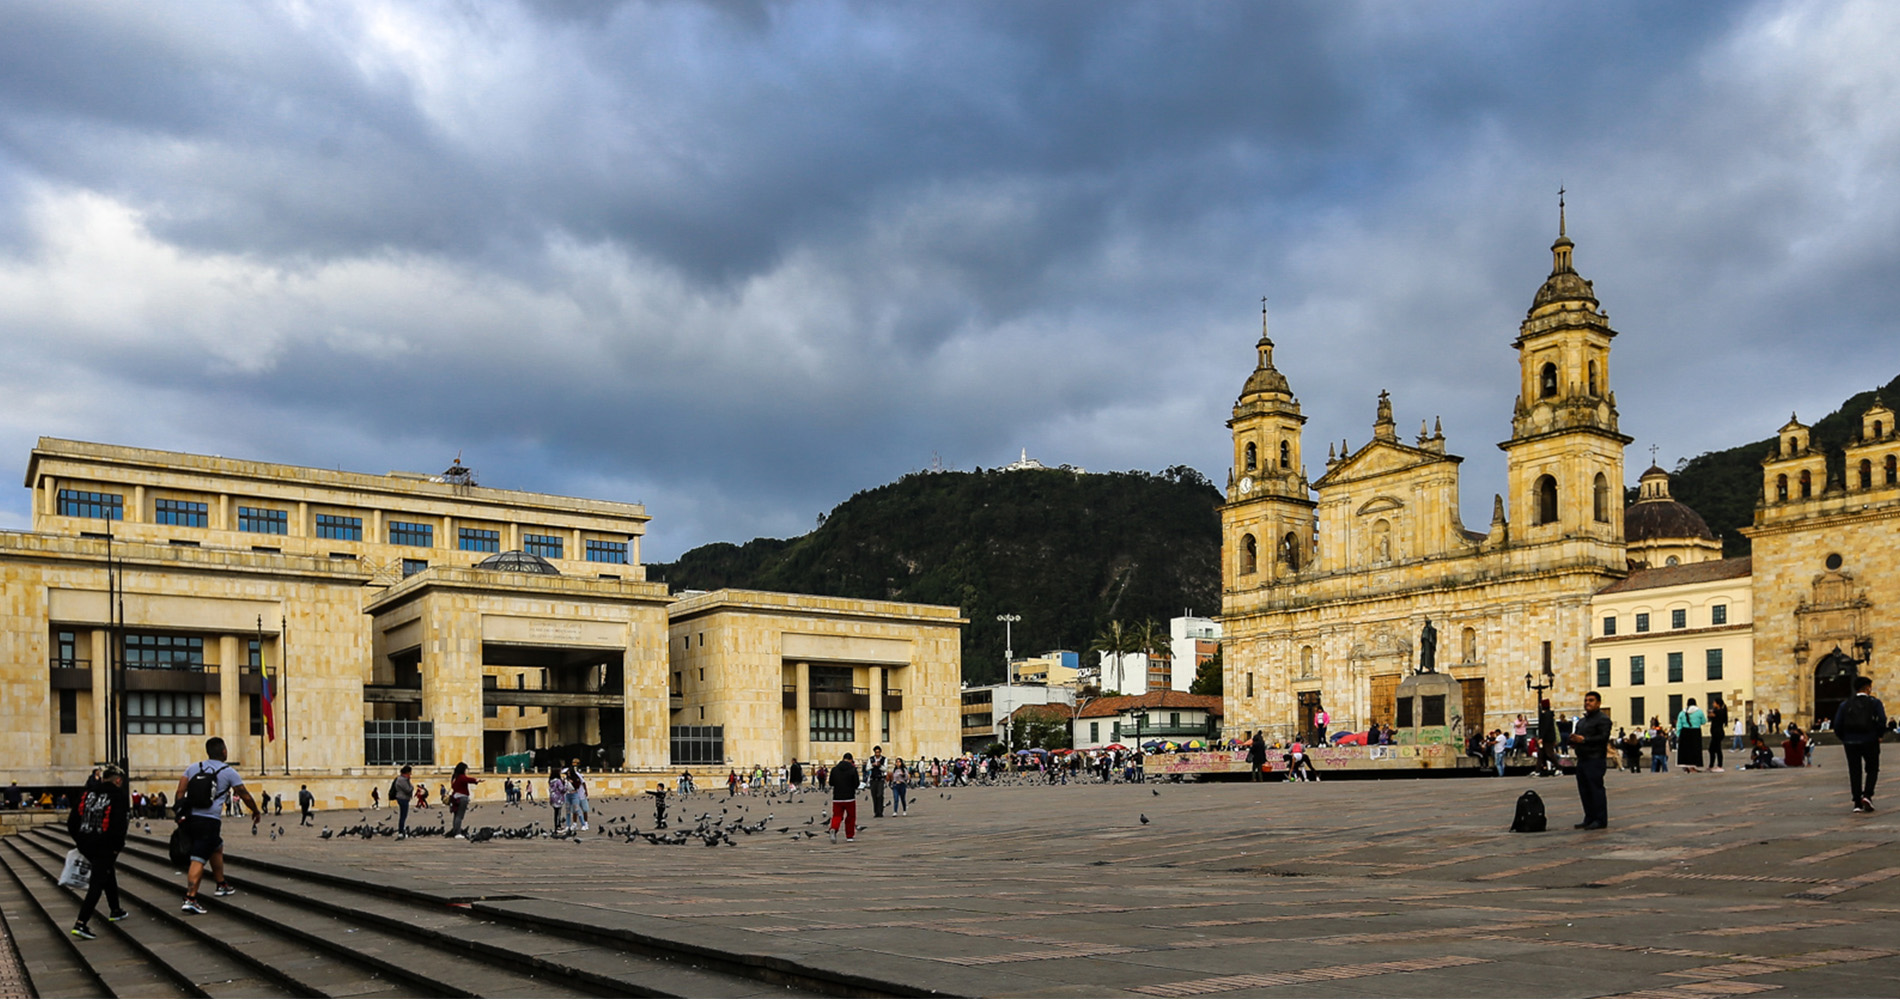 Place Bolivar